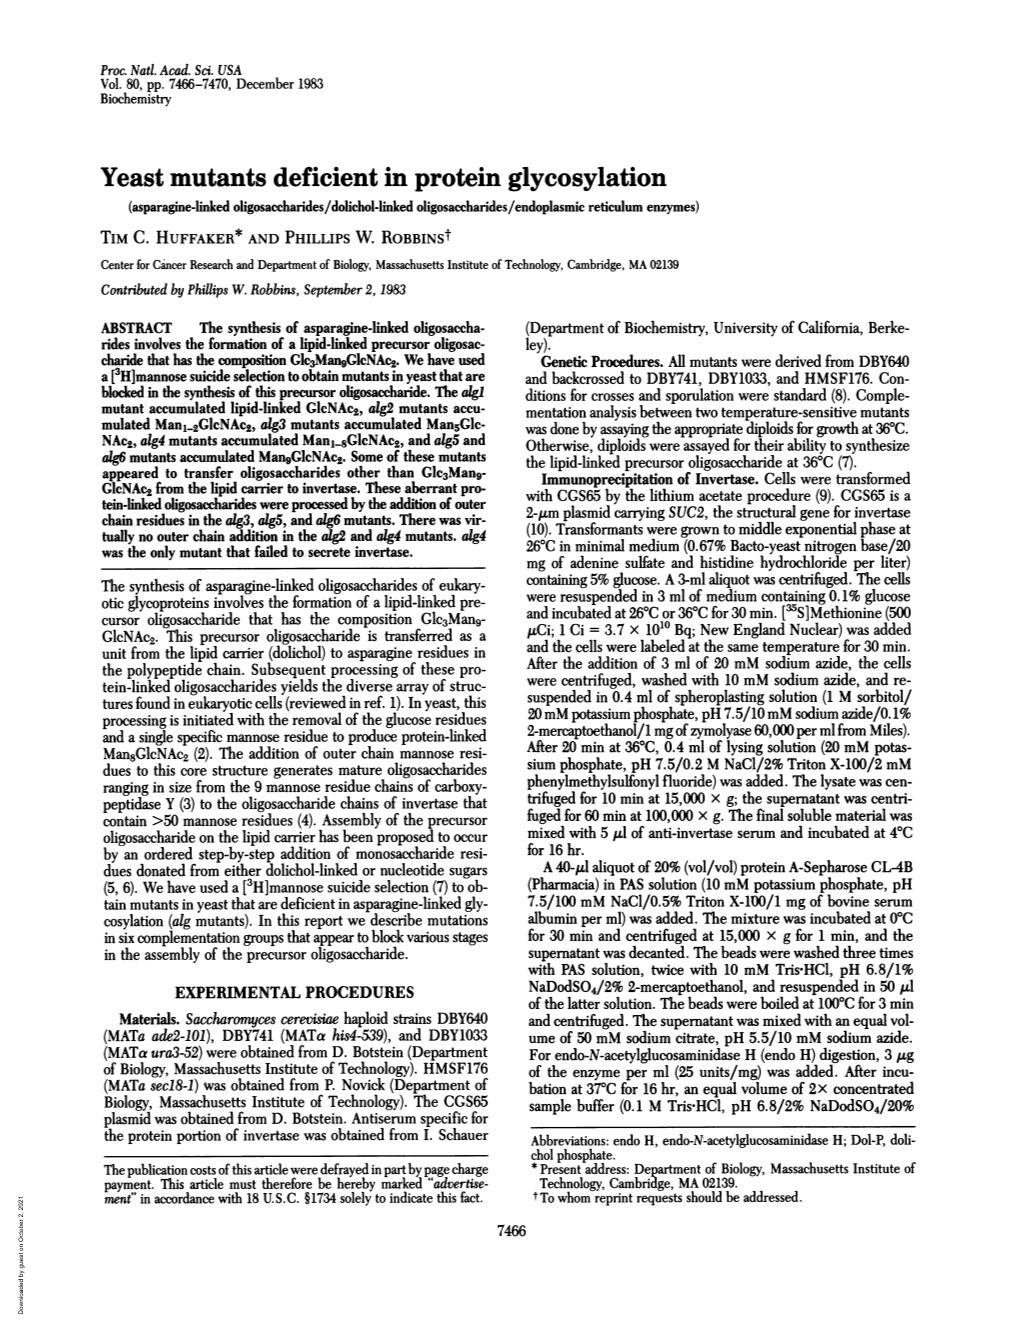 Yeast Mutants Deficient in Protein Glycosylation (Asparagine-Linked Oligosaccharides/Dolichol-Linked Oligosaccharides/Endoplasmic Reticulum Enzymes) TIM C